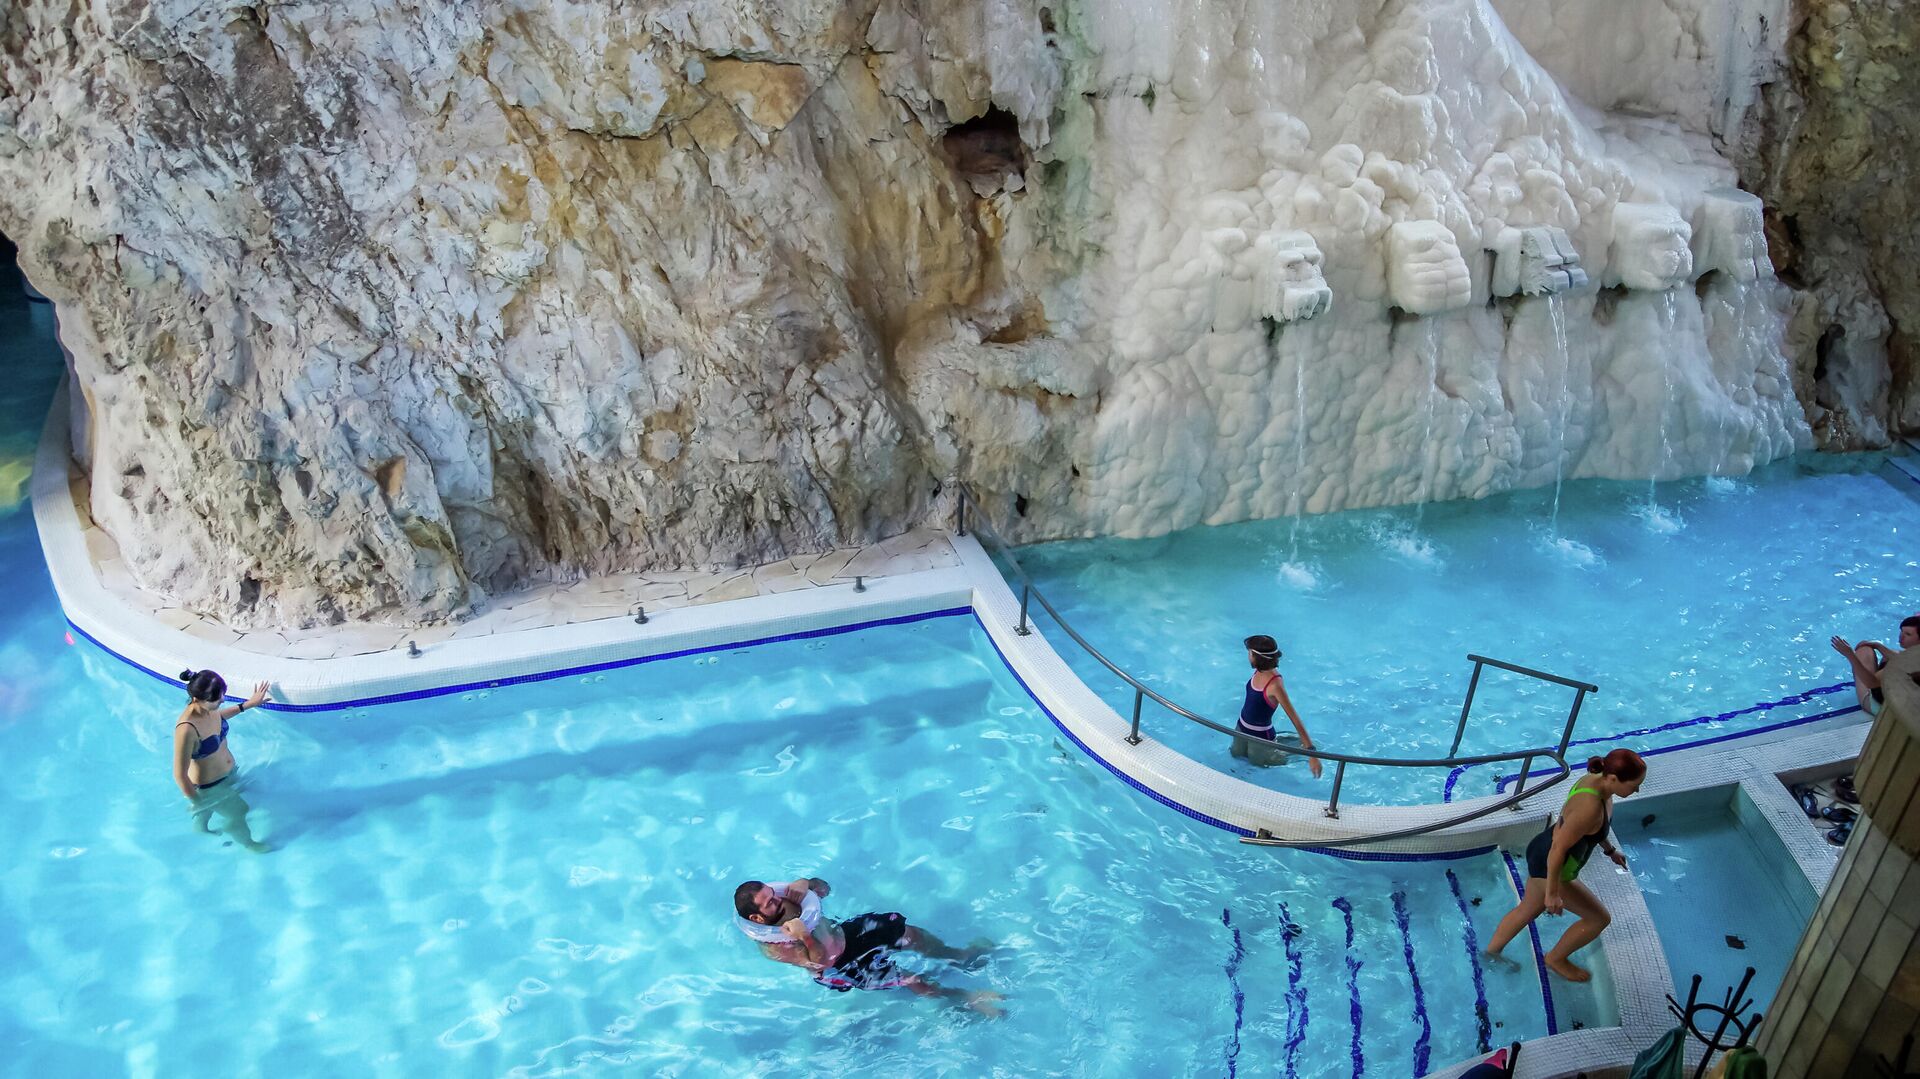 Пещерная купальня — термальные ванны в естественной пещере на курорте Мишкольц-Тапольца - РИА Новости, 1920, 12.08.2021